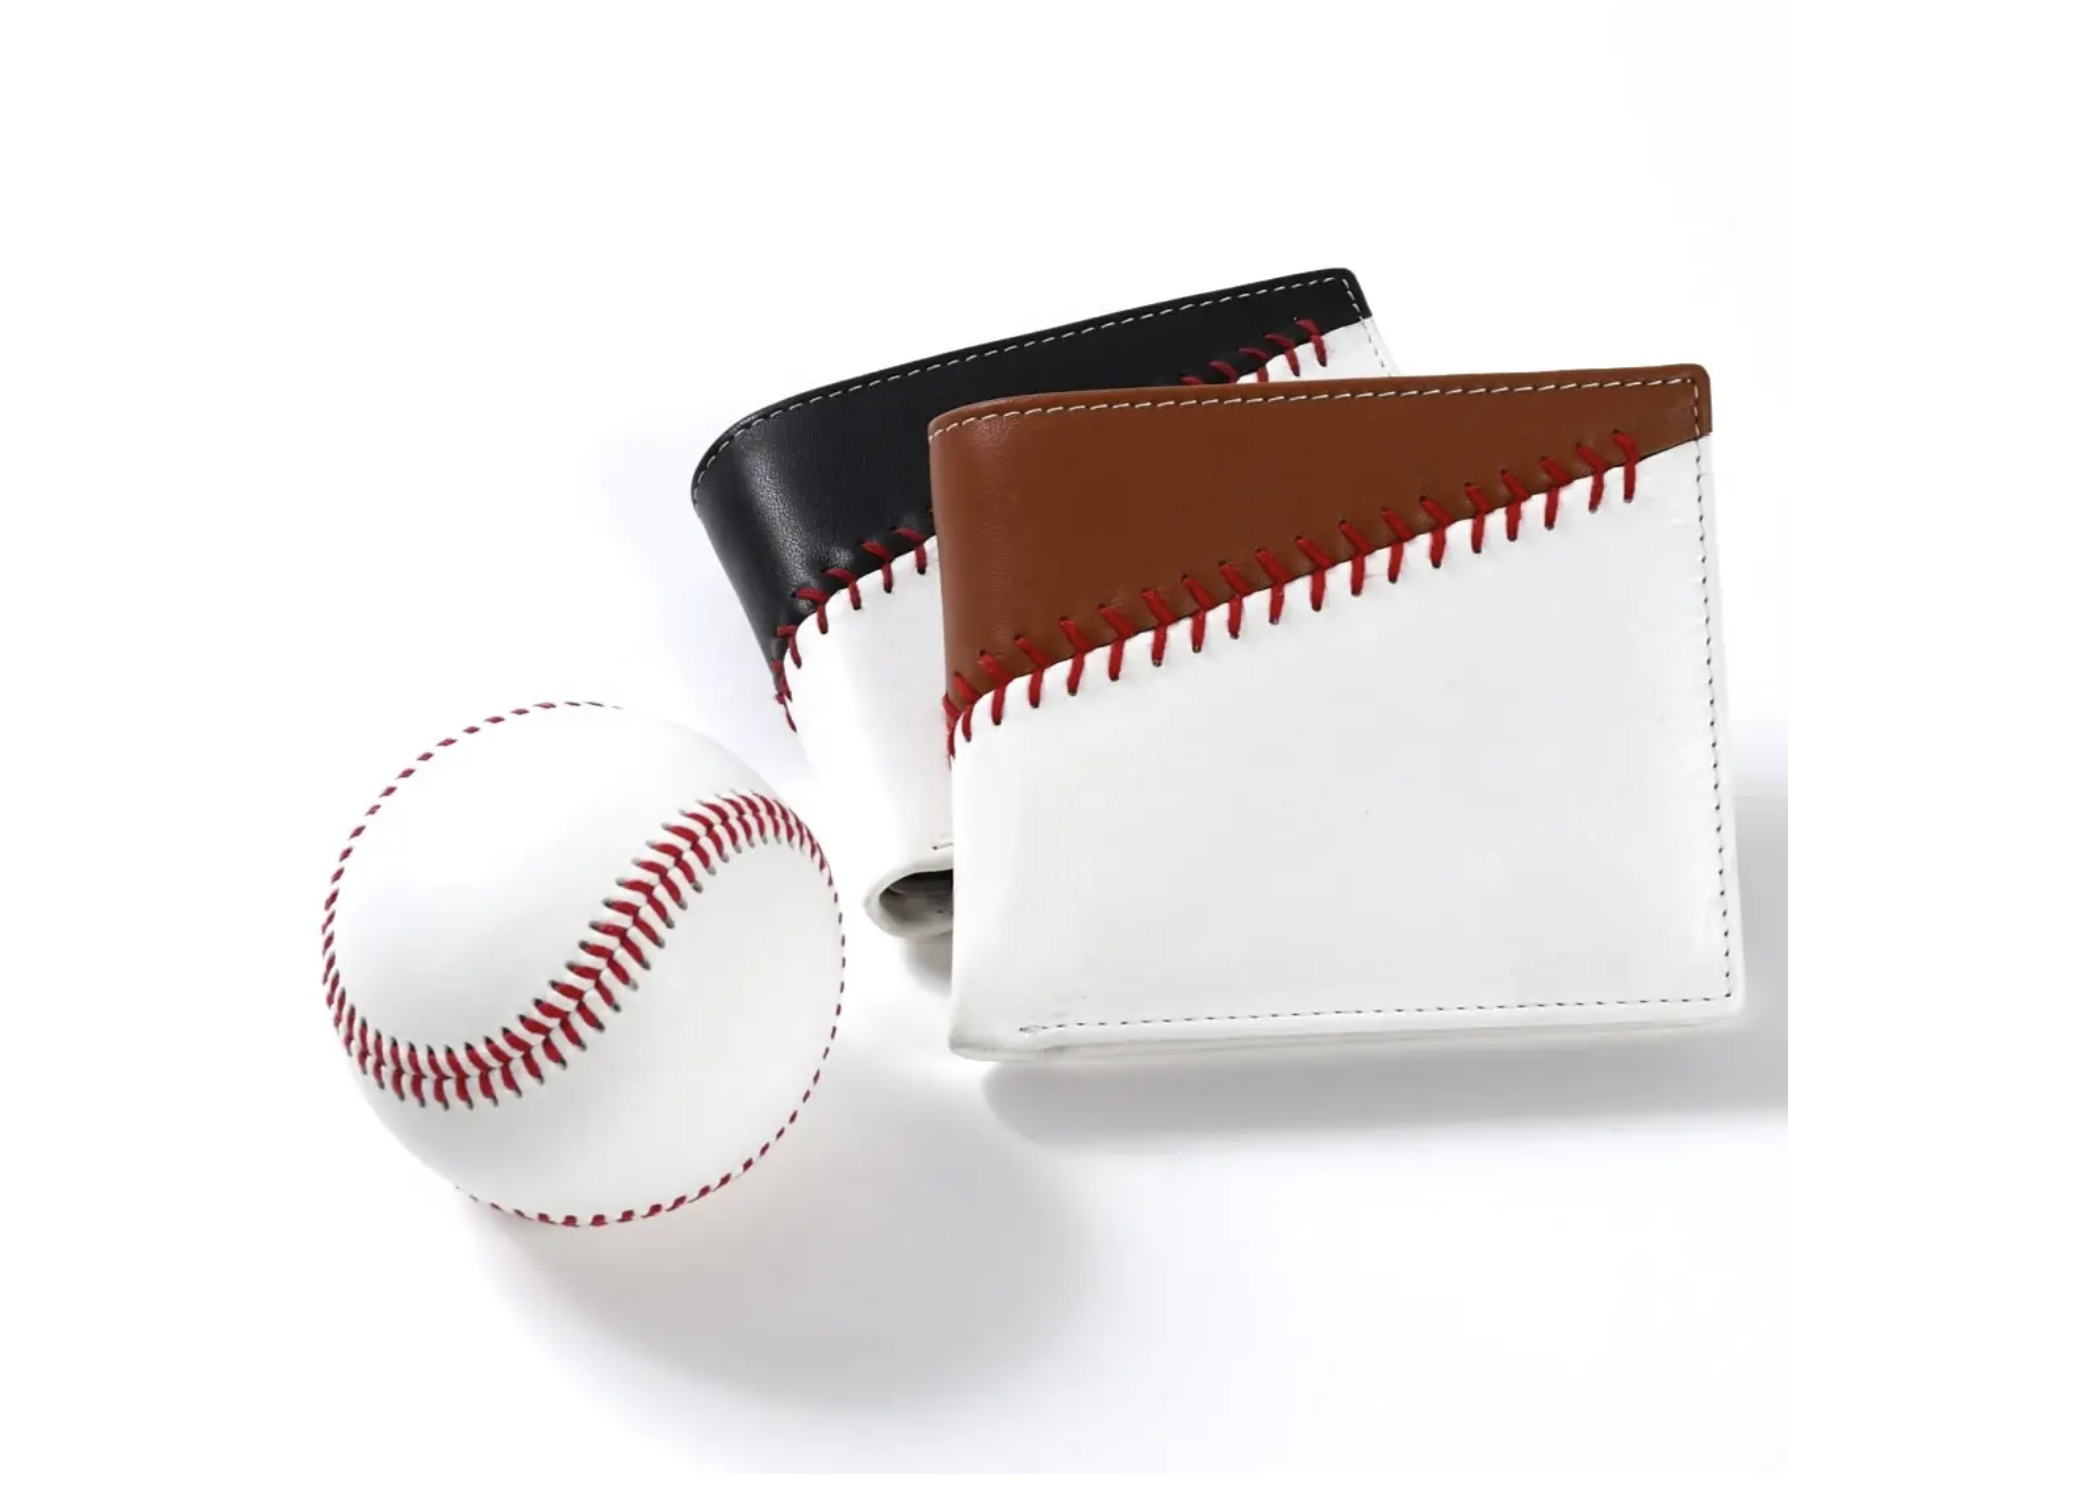 野球ボール製造の職人が手縫いでつくる、赤い縫い目がアイコニックな財布は野球ファンならマストバイ！